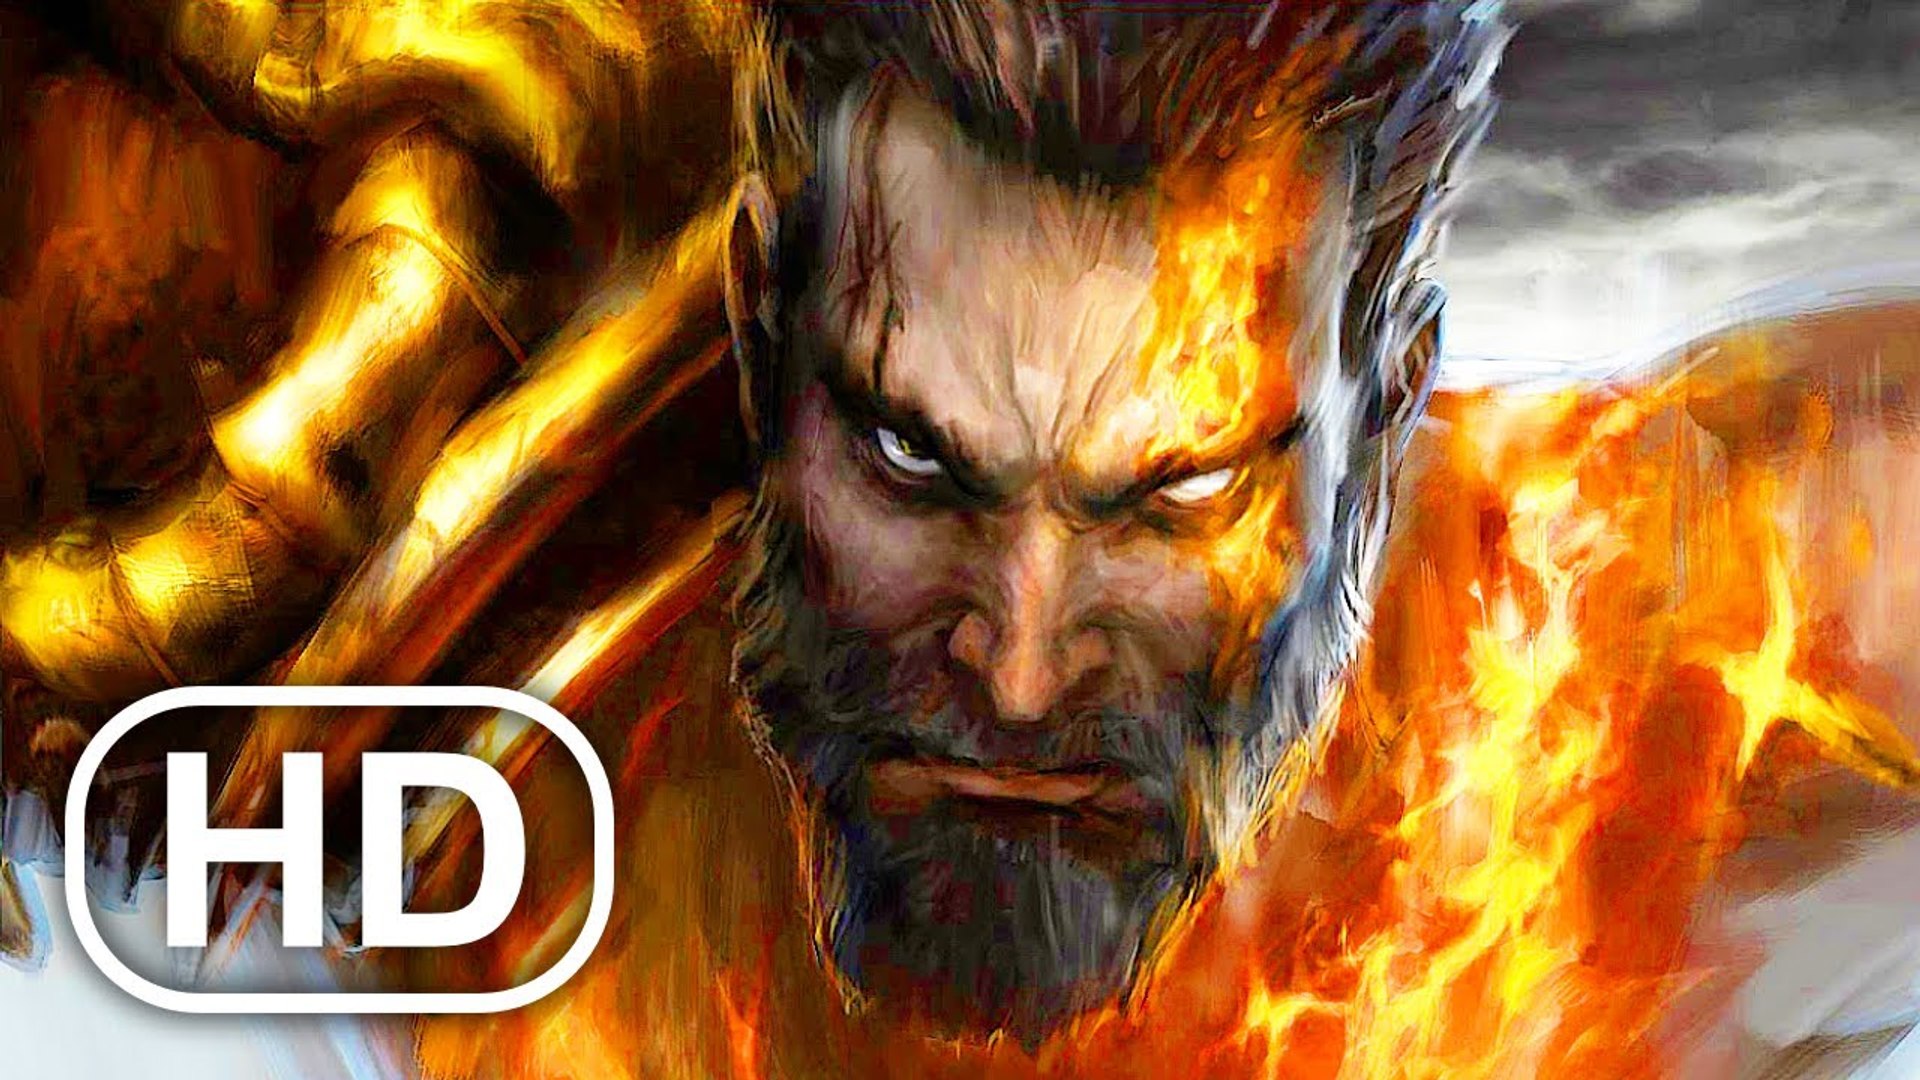 God of War 5 Ragnarok - HEIMDALL Boss Fight Vs Kratos (4K 60FPS